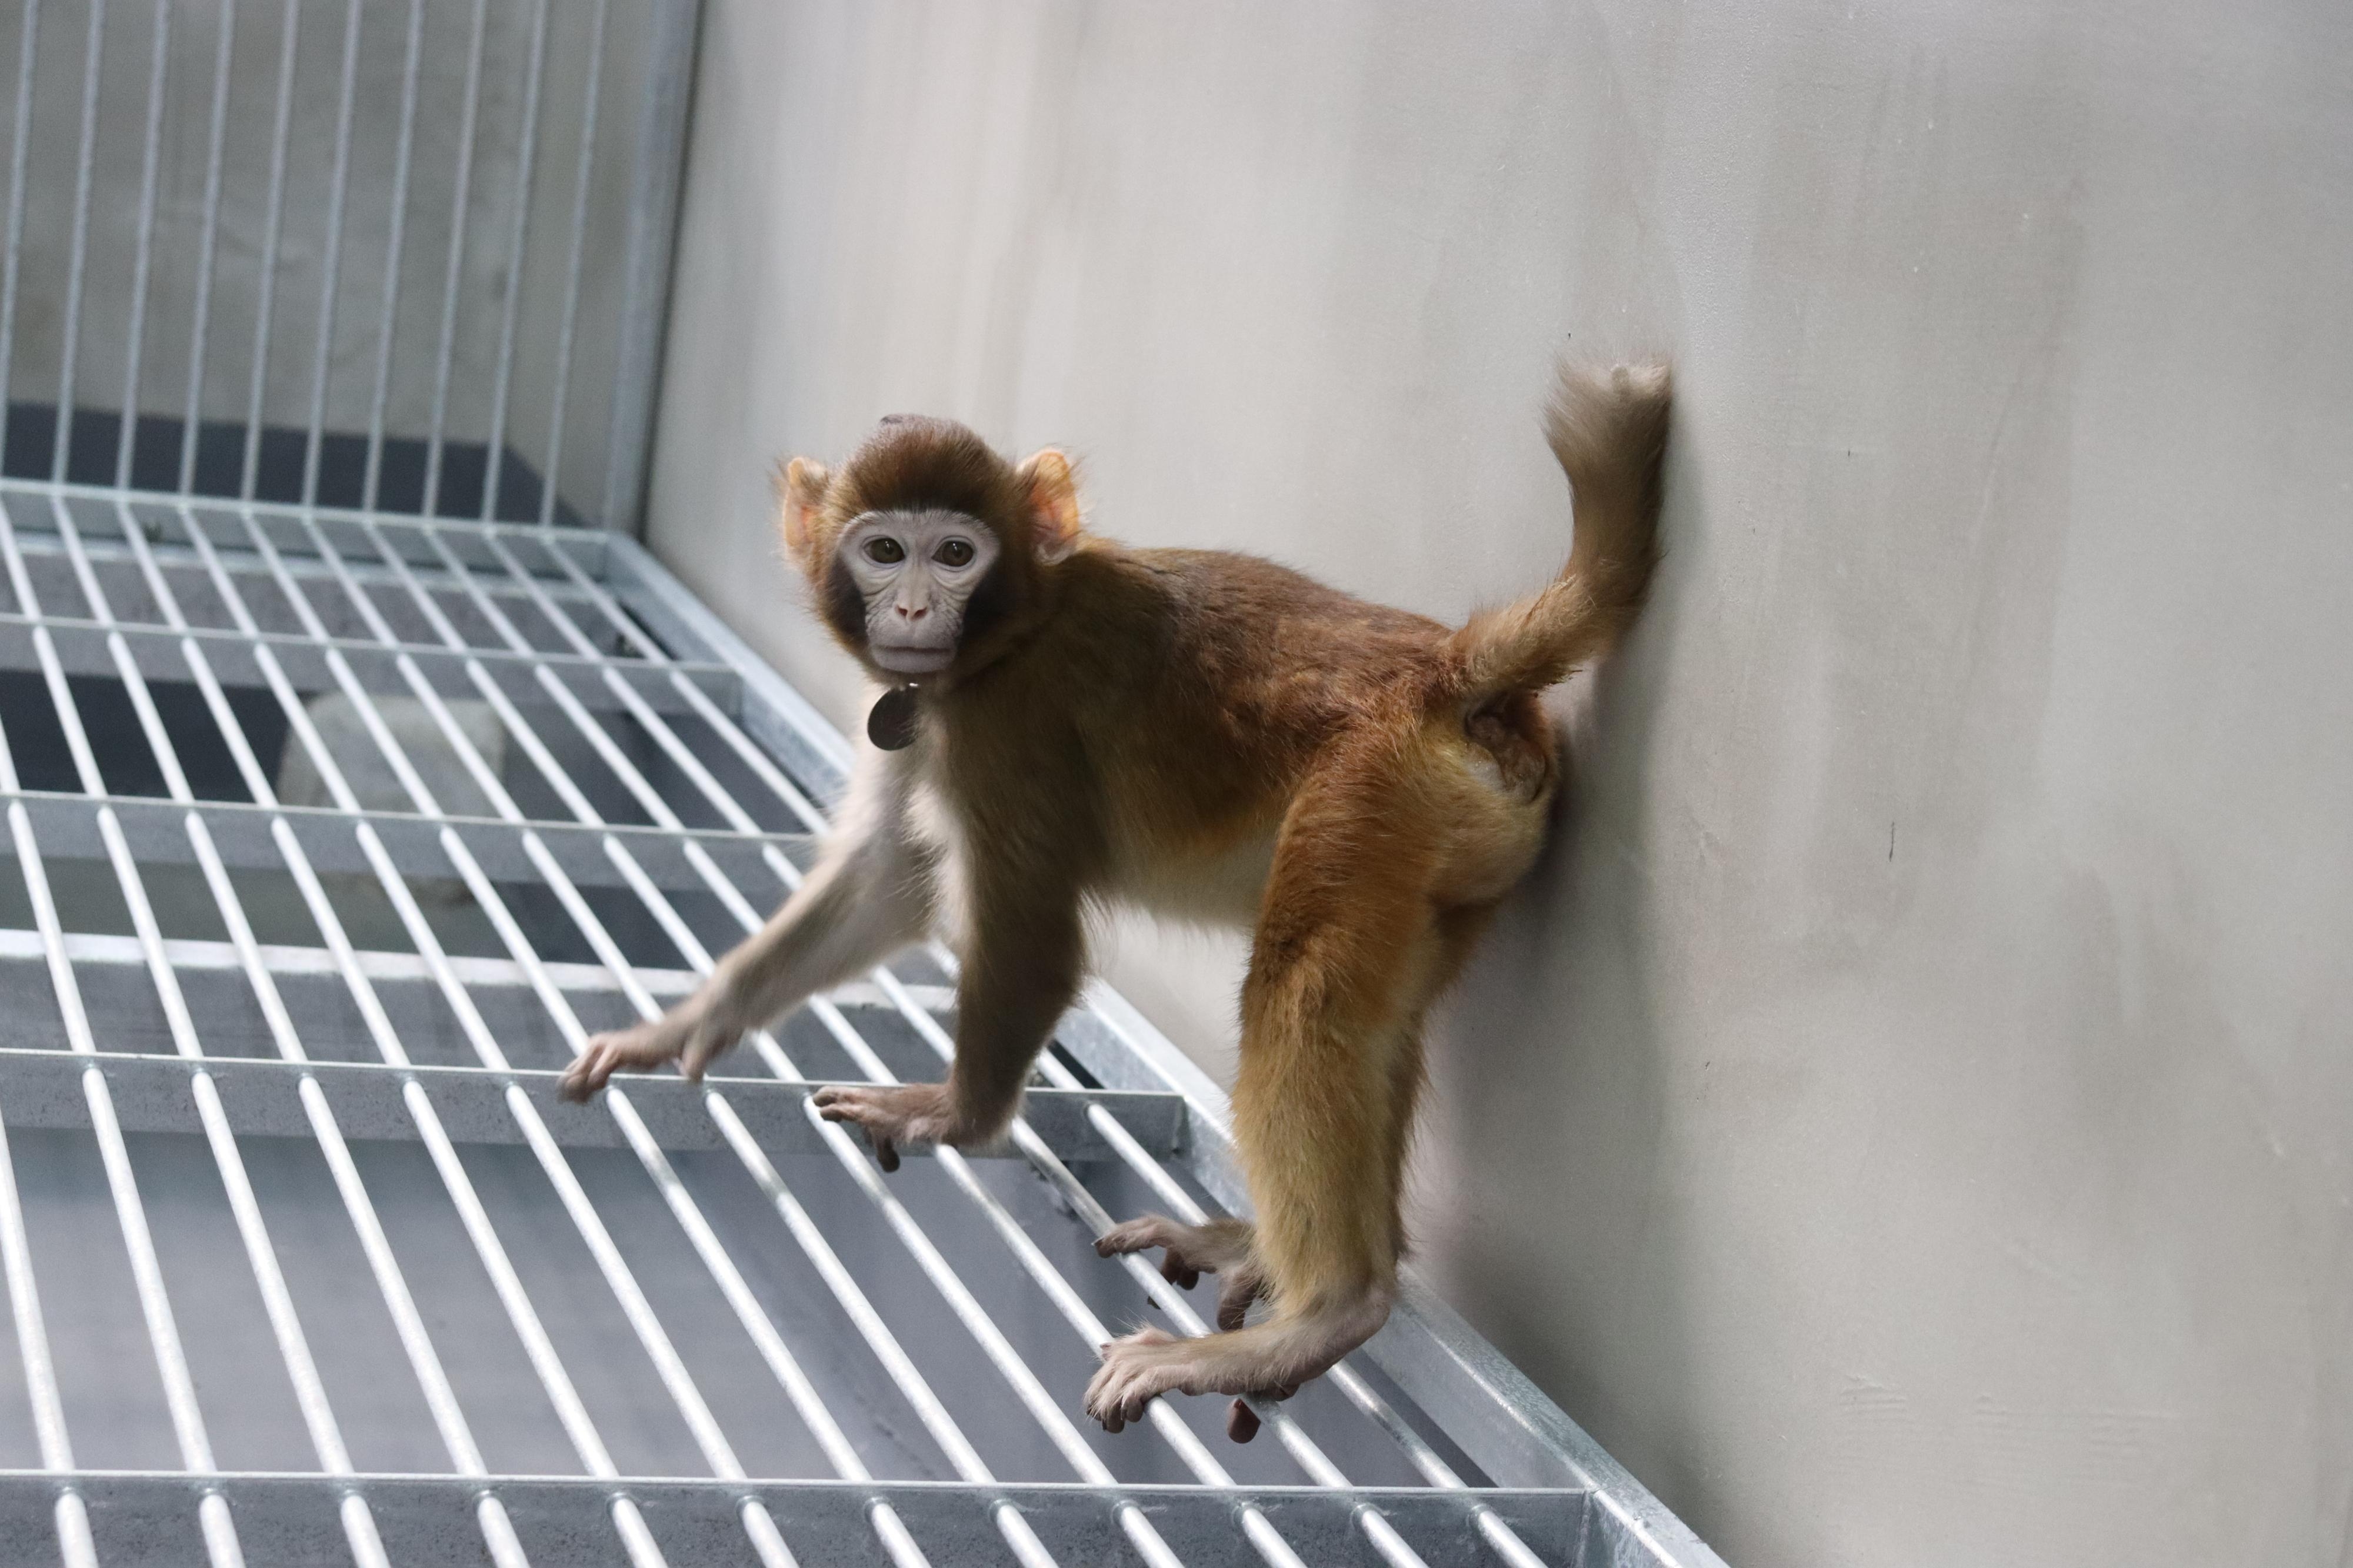 중국 연구진이 체세포 복제 방식을 이용해 그동안 성공하지 못했던 붉은털원숭이 복제에 성공했다고 밝혔다. 복제 동물들이 태어난 지 얼마 안돼 죽는 것과 달리 이번에 복제된 붉은털원숭이는 2년 이상 생존하고 있는 것으로 확인됐다.  네이처 커뮤니케이션즈 제공